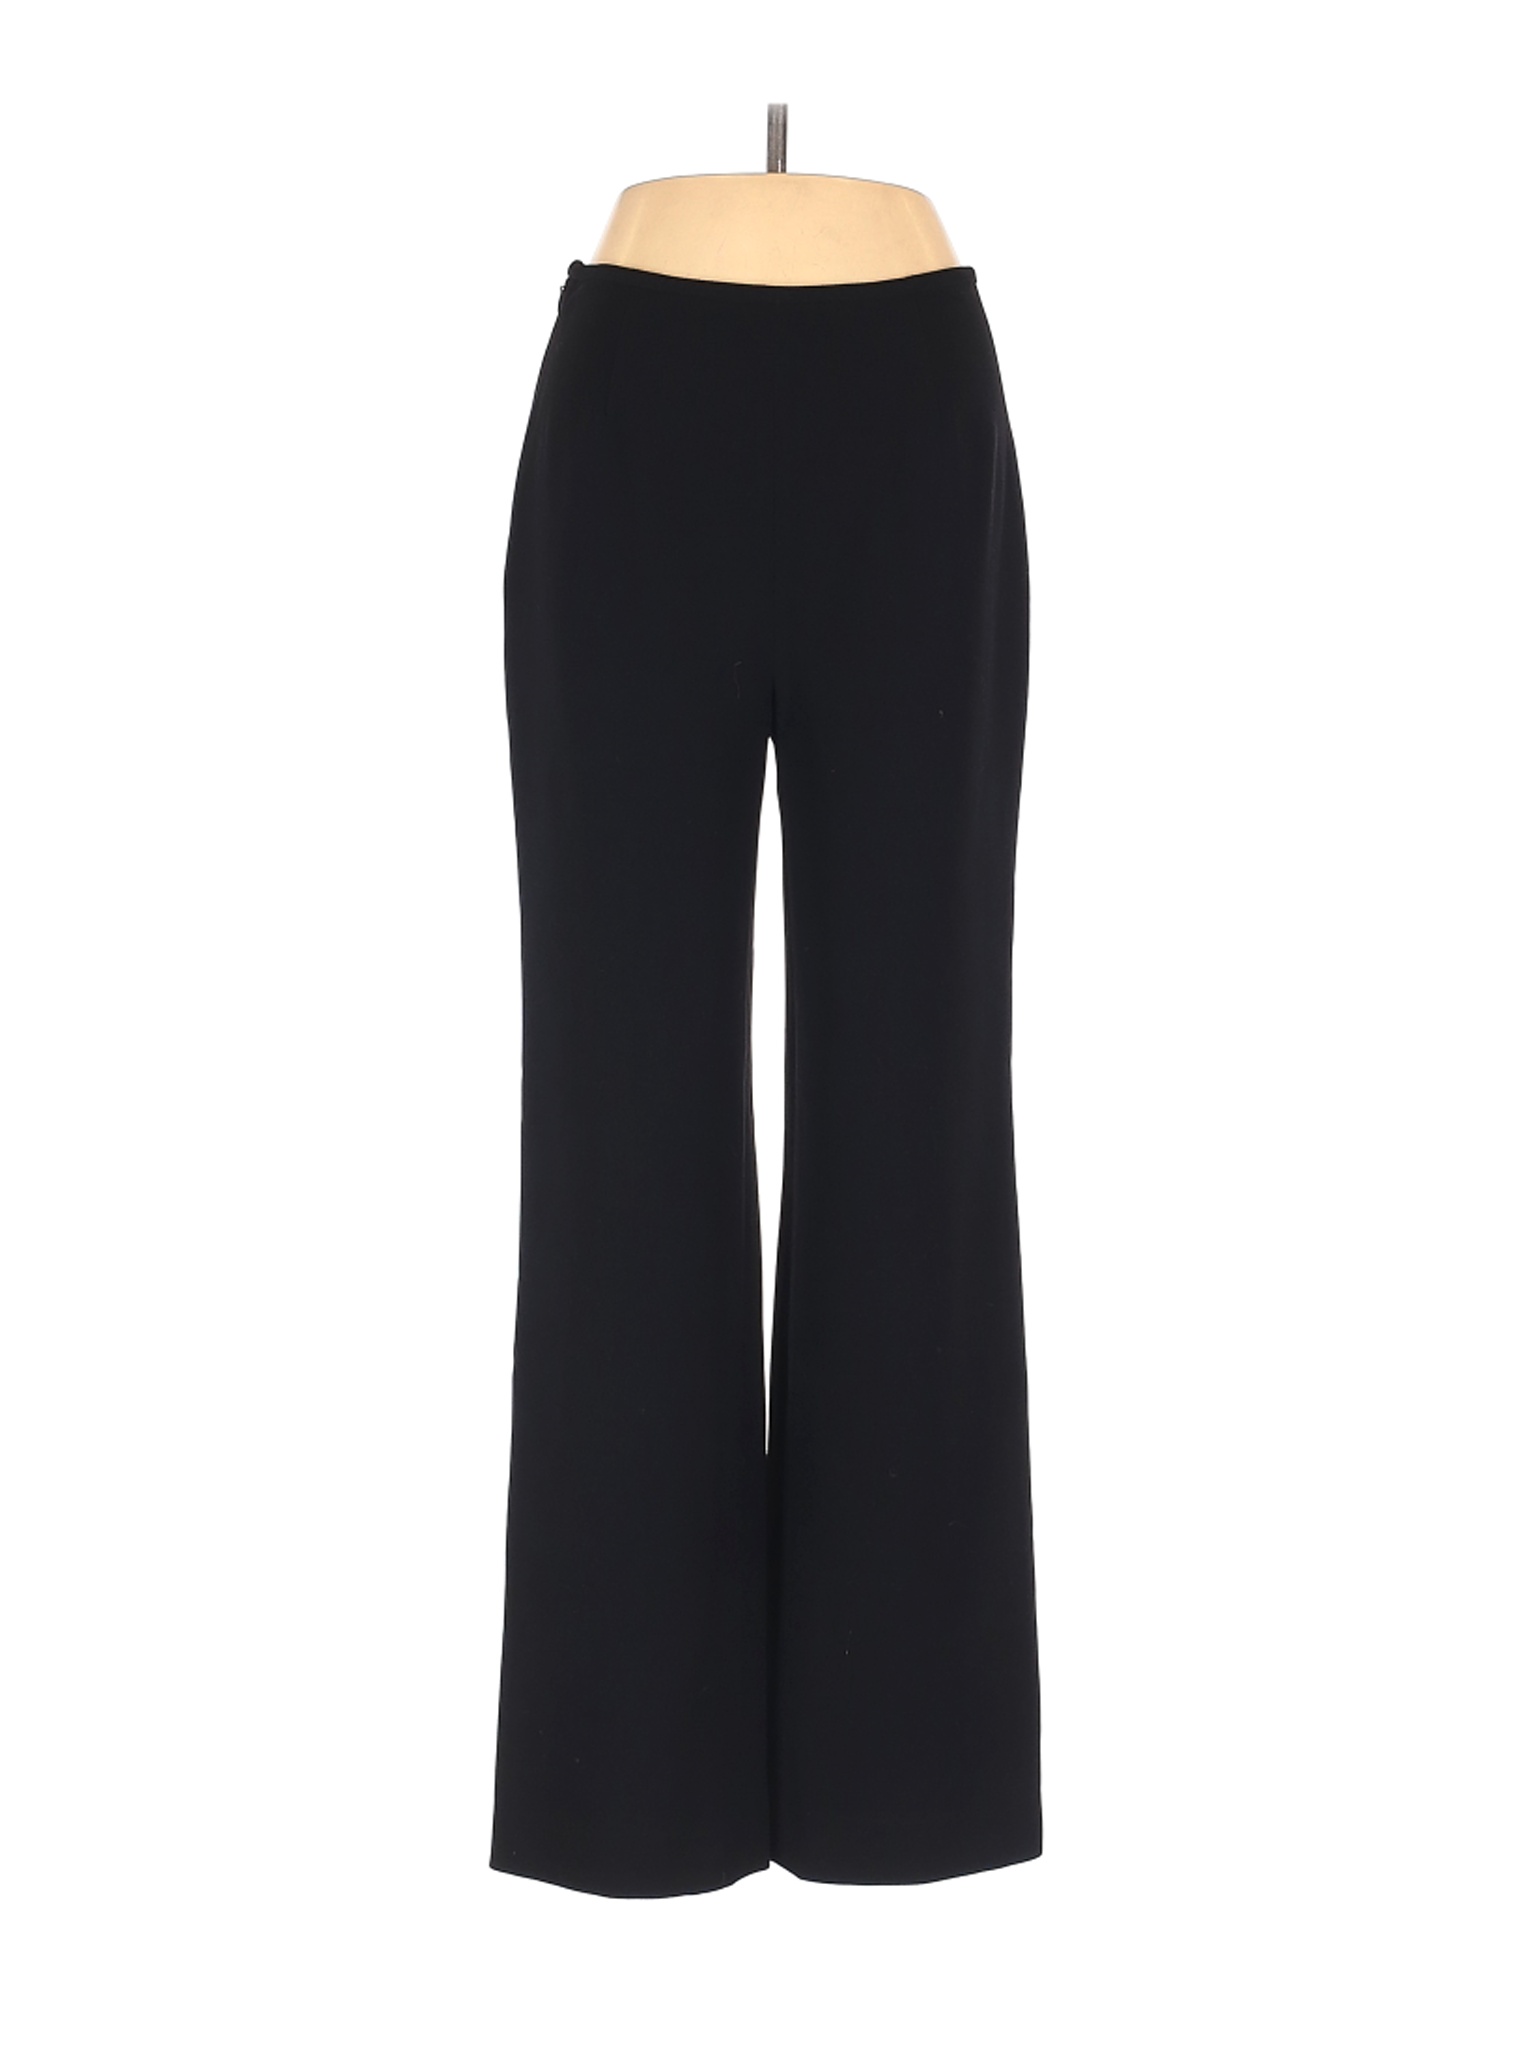 Pierre Cardin Women Black Dress Pants XS | eBay